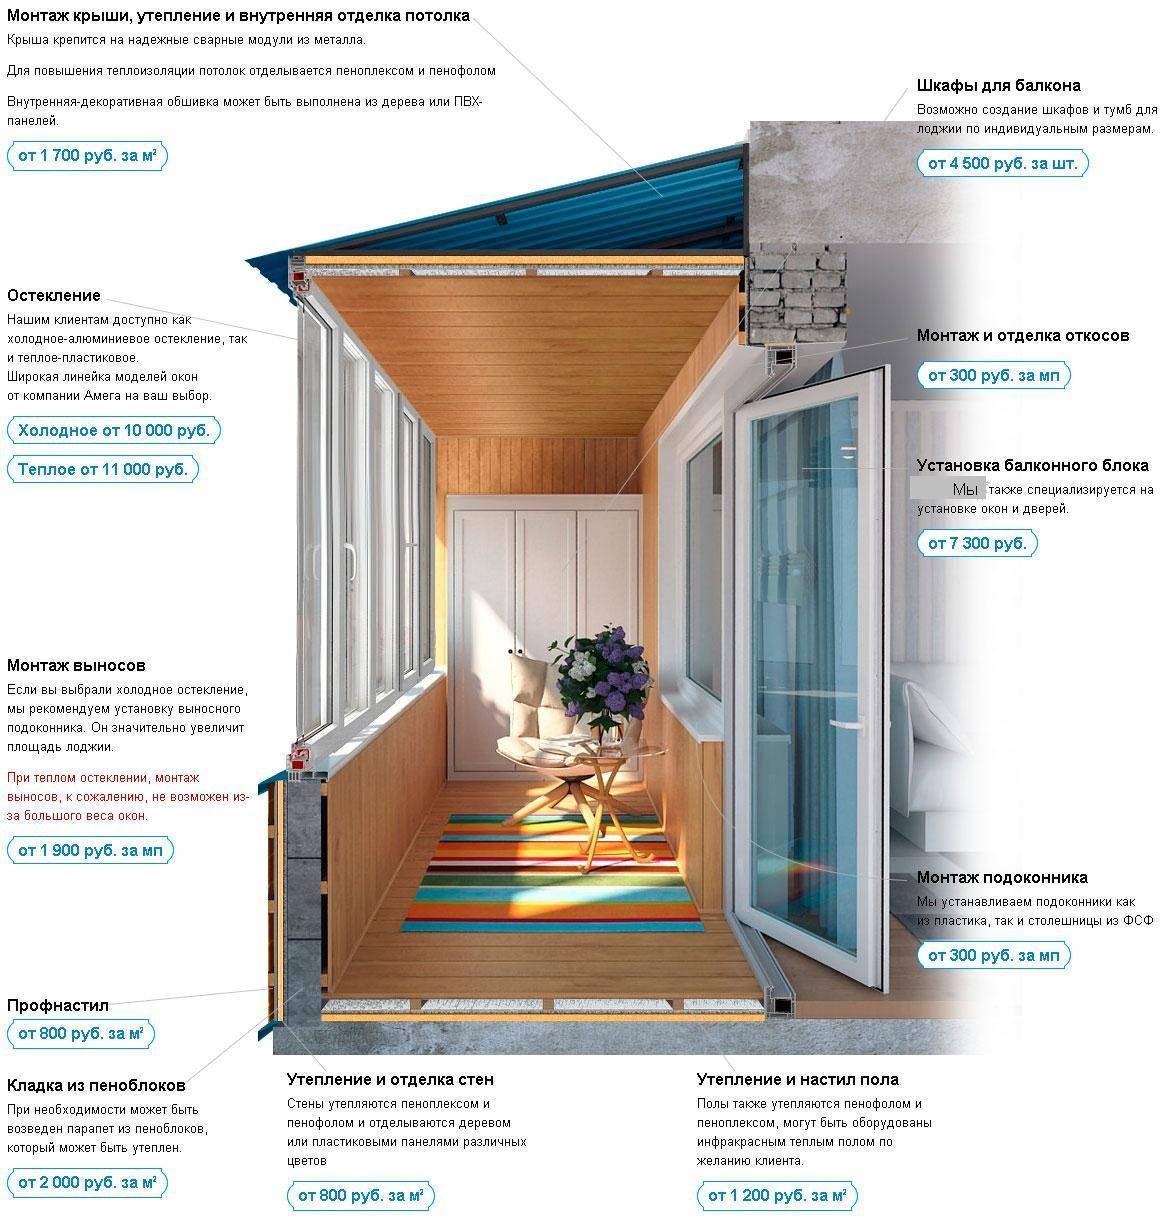 Как оформить балкон в квартире своими руками | legko.com